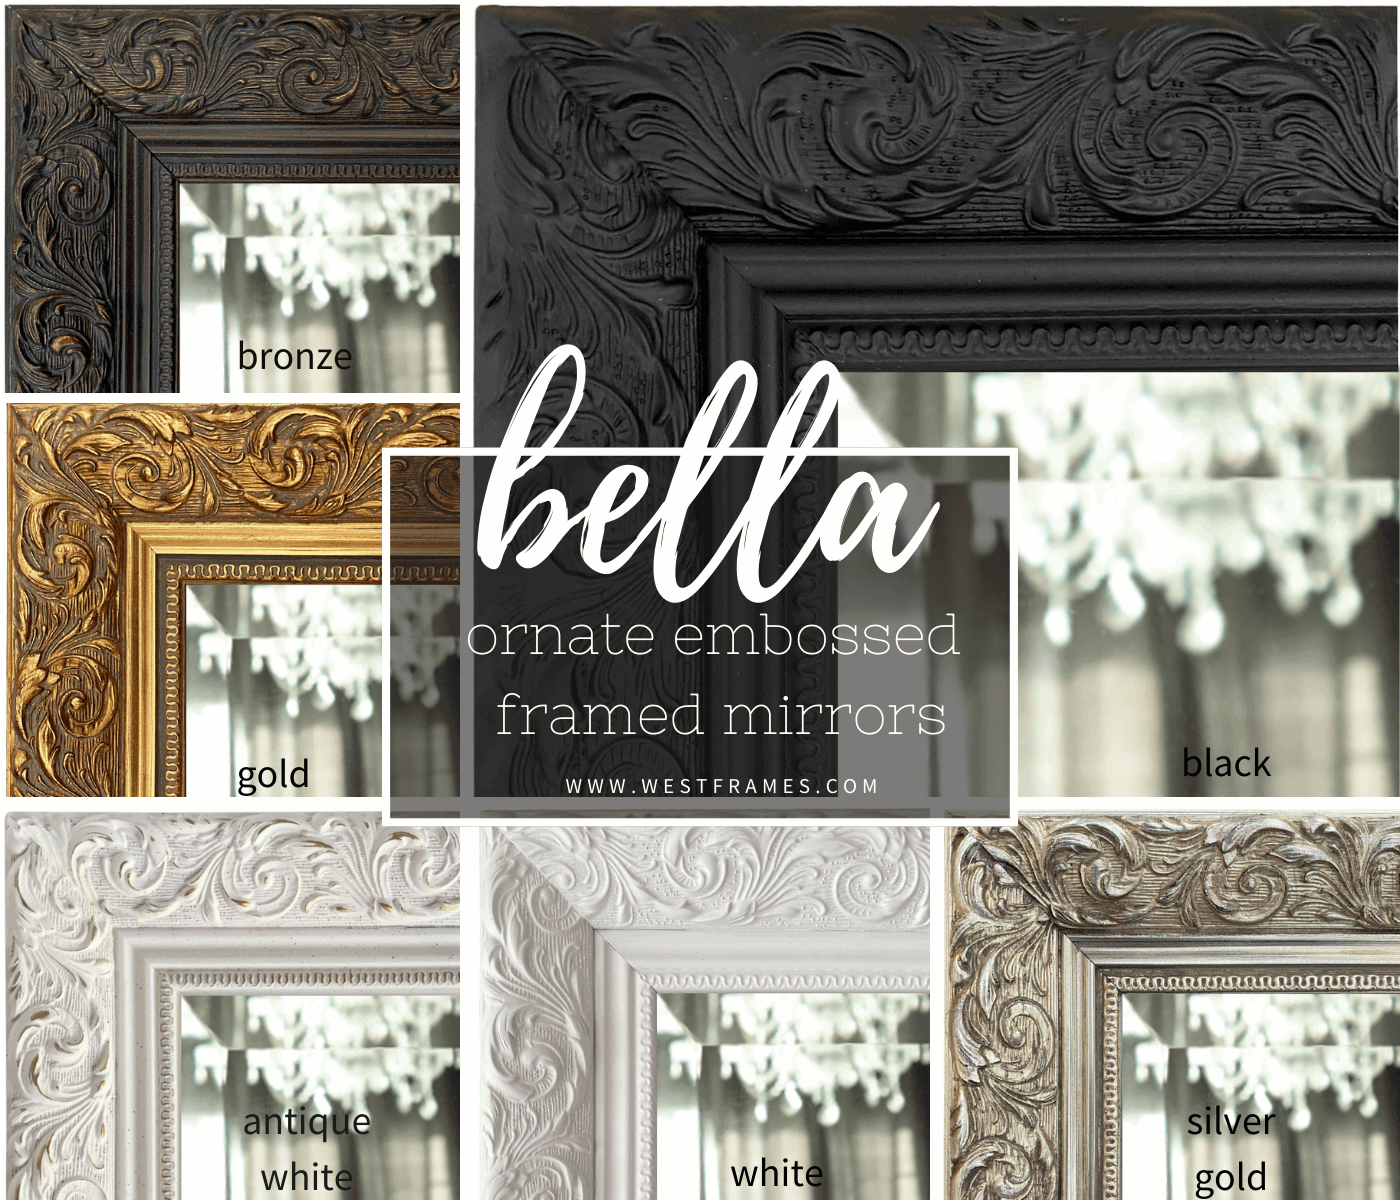 Bella French Ornate Embossed Wood Framed Floor Mirror Vintage Black - West Frames